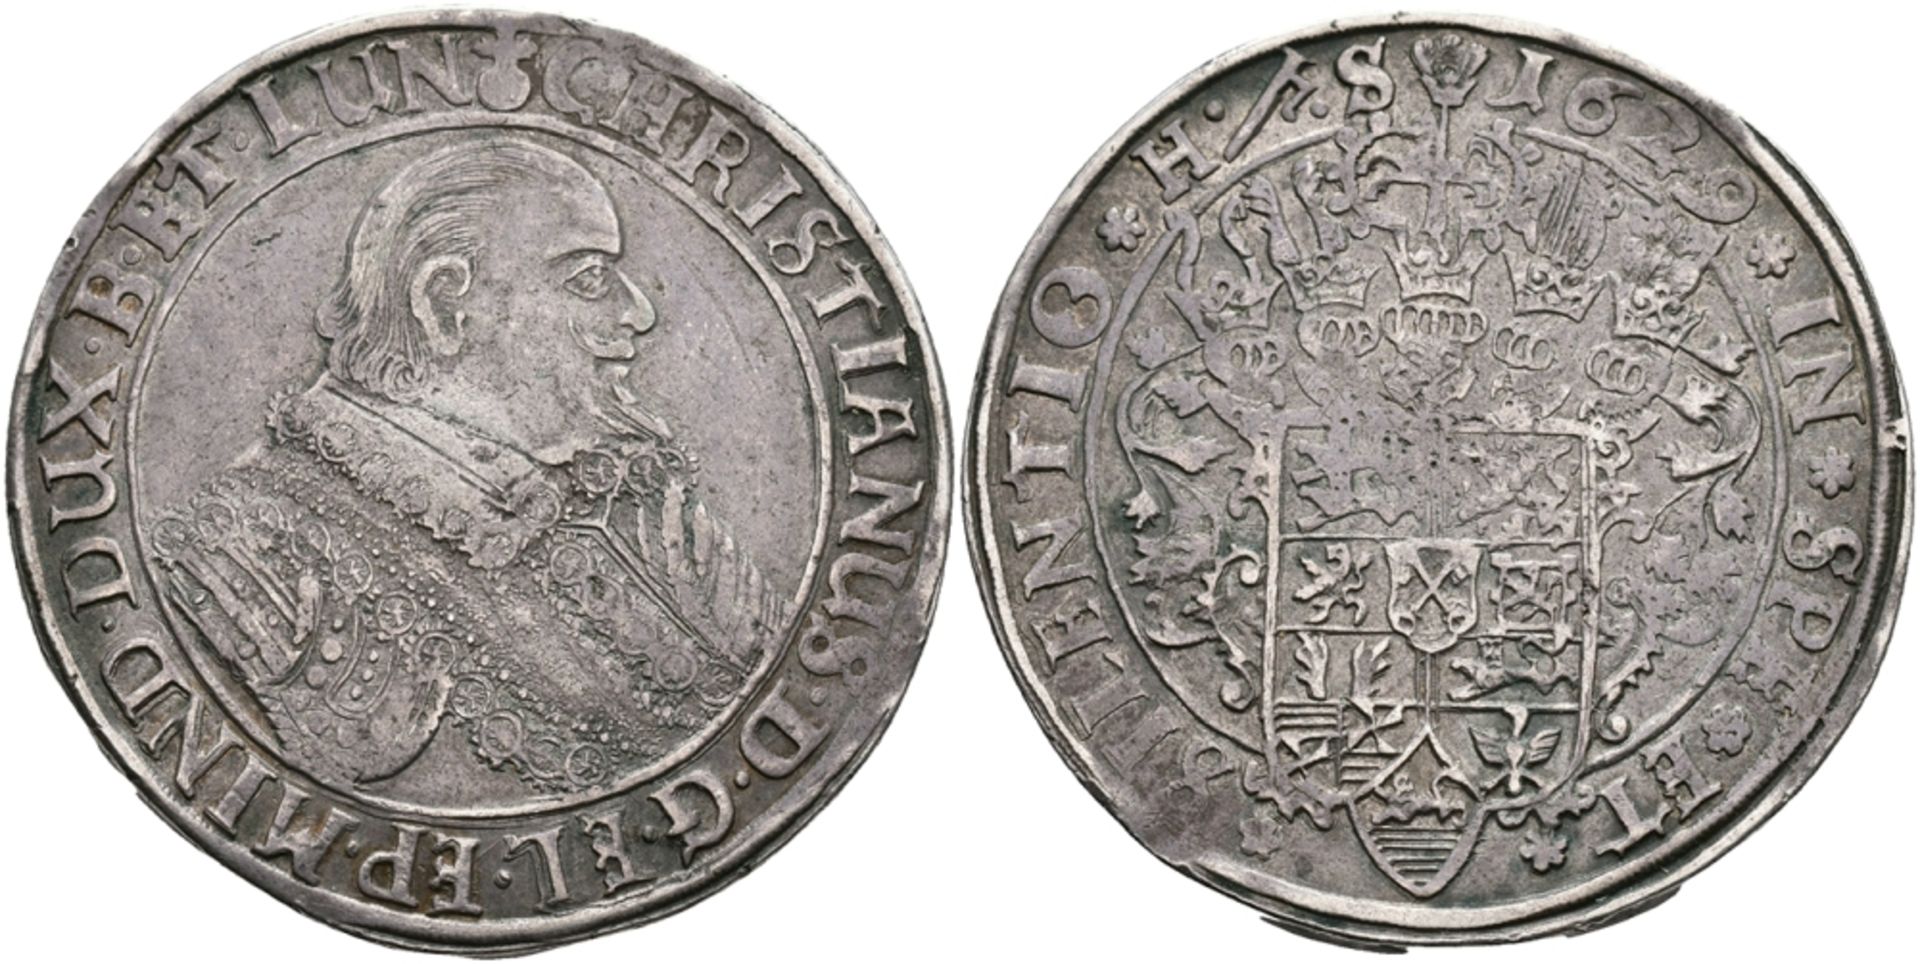 Taler, 1629, Christian, Bischof von Minden. Dav. 6475, Welter 924, kleine Schrötlingsfehler, ss.